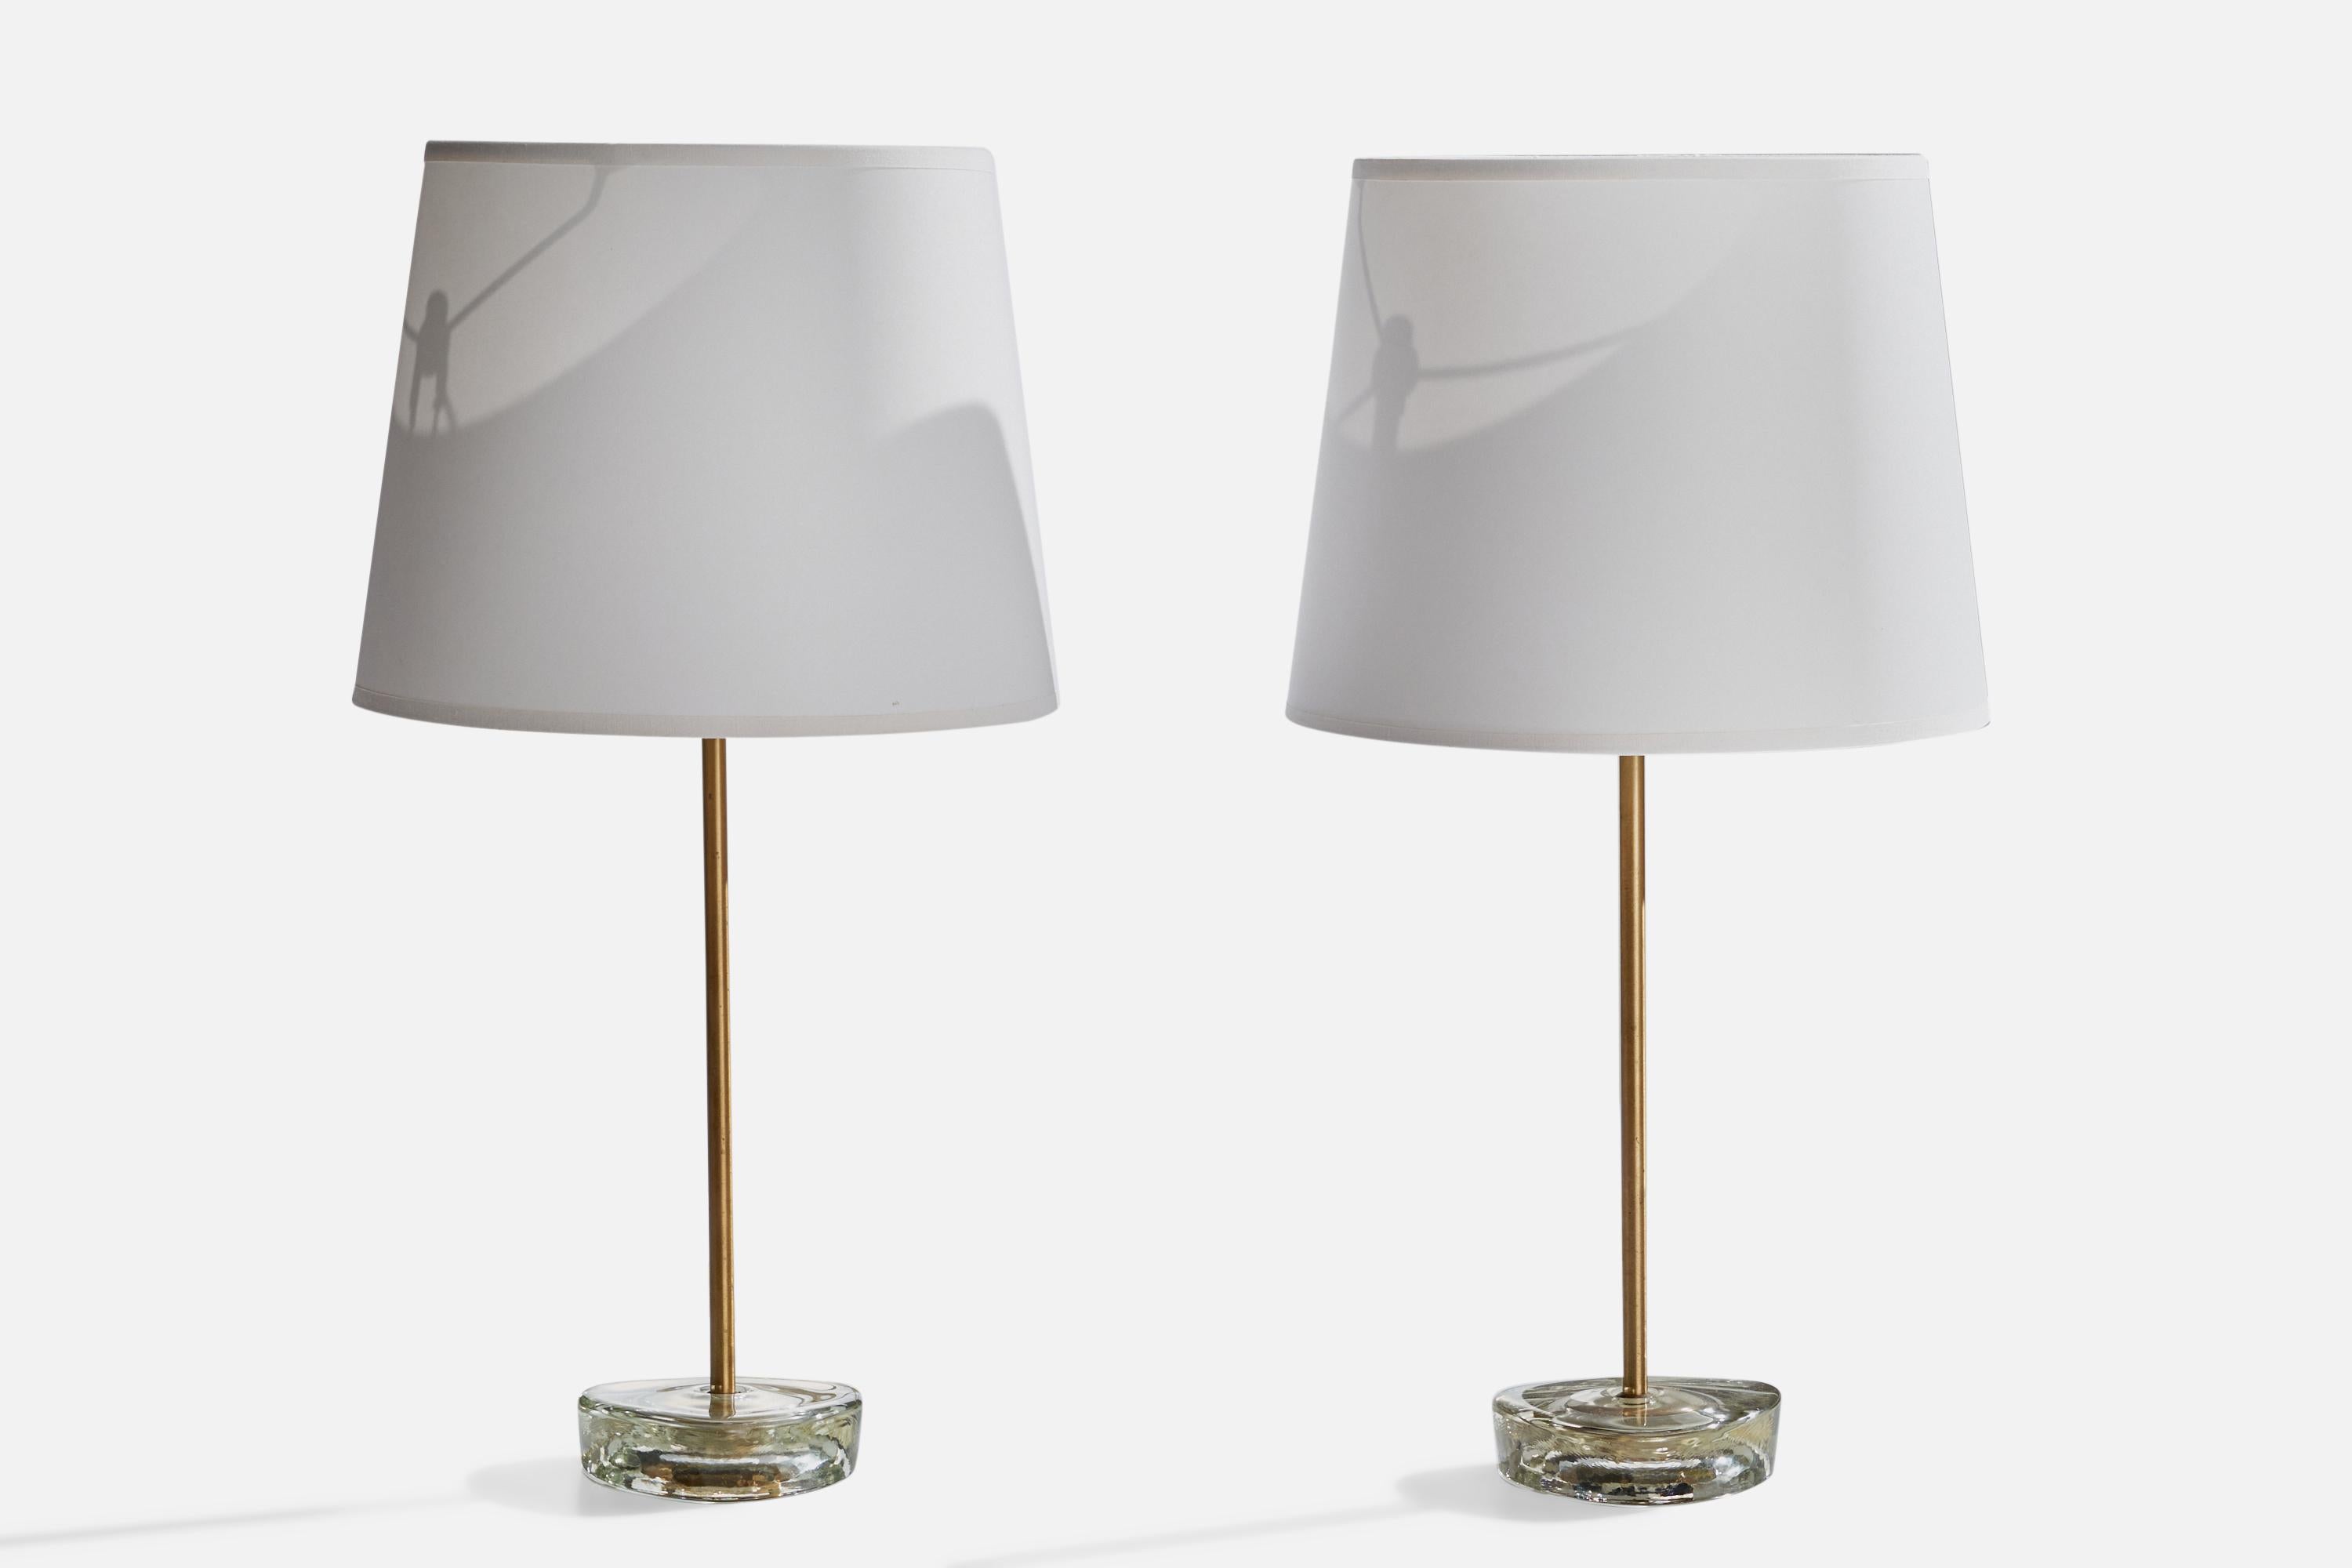 Paire de lampes de table en laiton et en verre conçues et produites par A.I.Cne Armaturfabrik, Suède, c.C. 1960.

Dimensions de la lampe (pouces) : 13.5